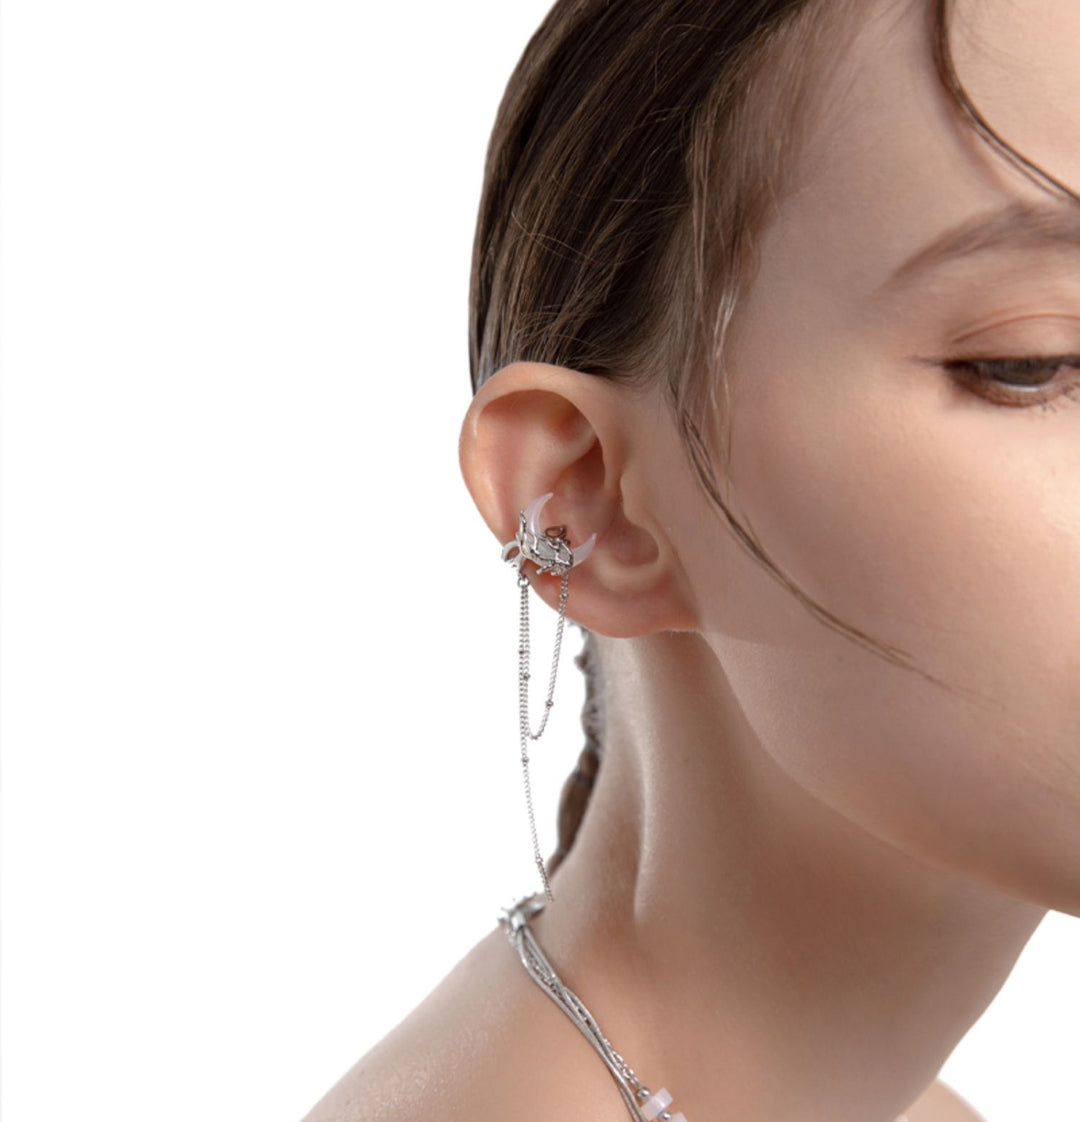 Women's Tassel Earrings Without Ear Holes